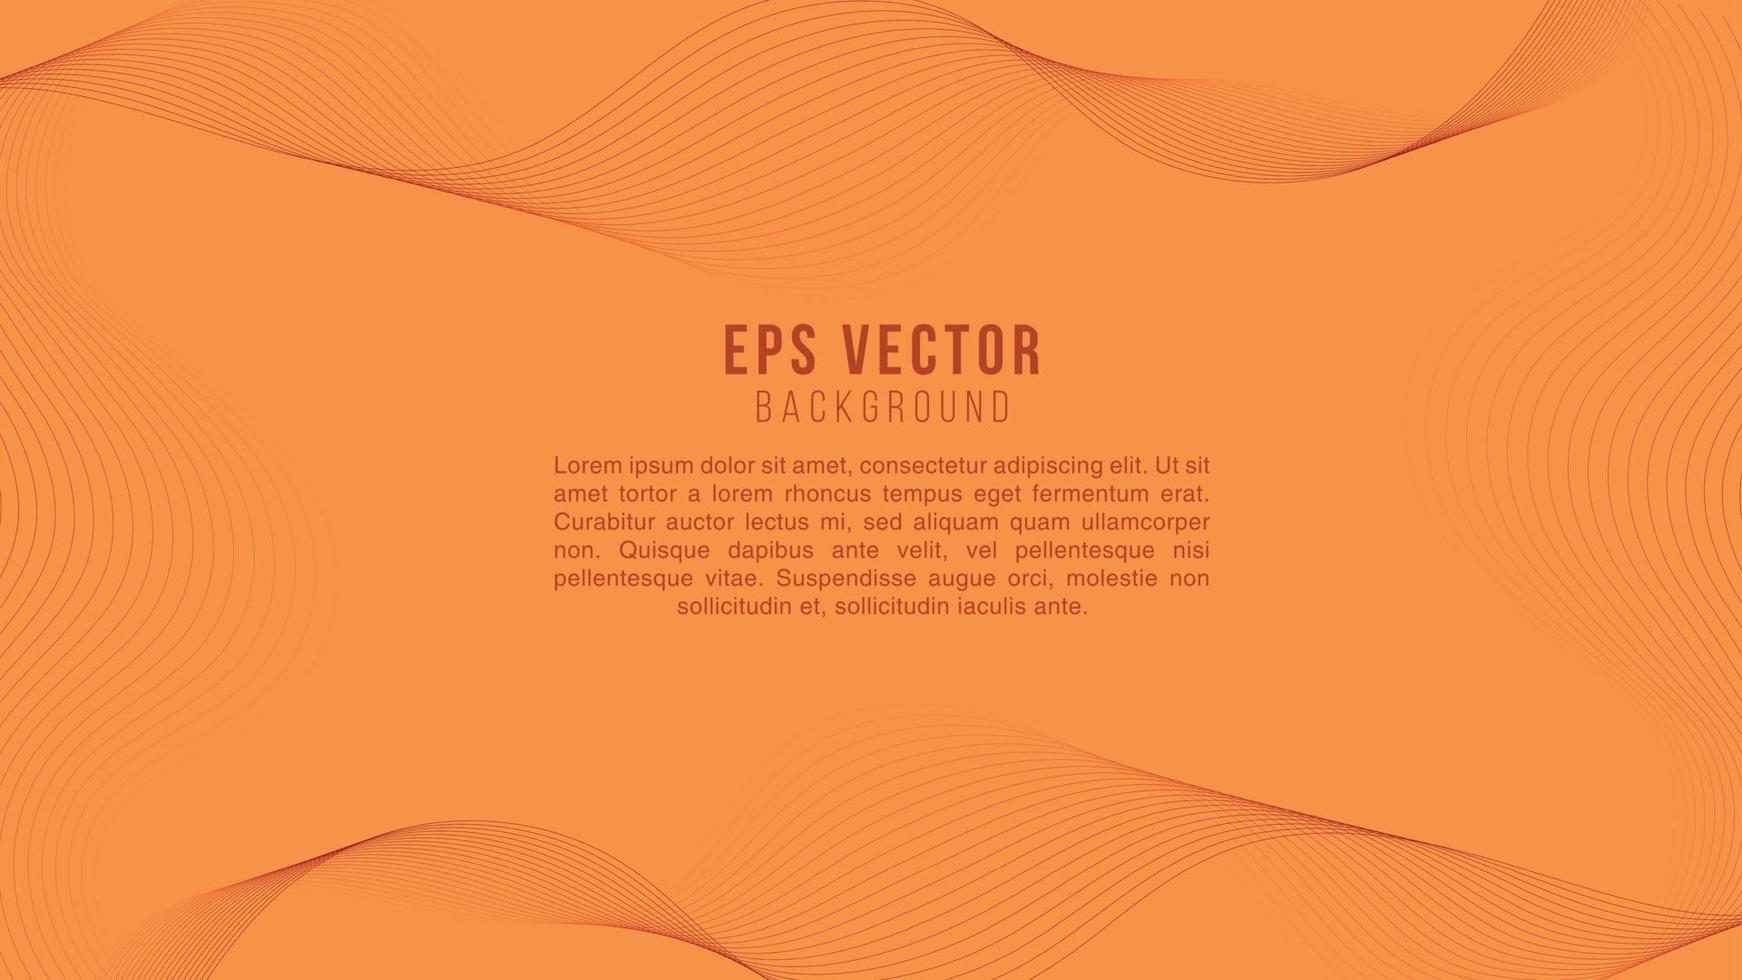 naranja línea arte fondo abstracto eps vector